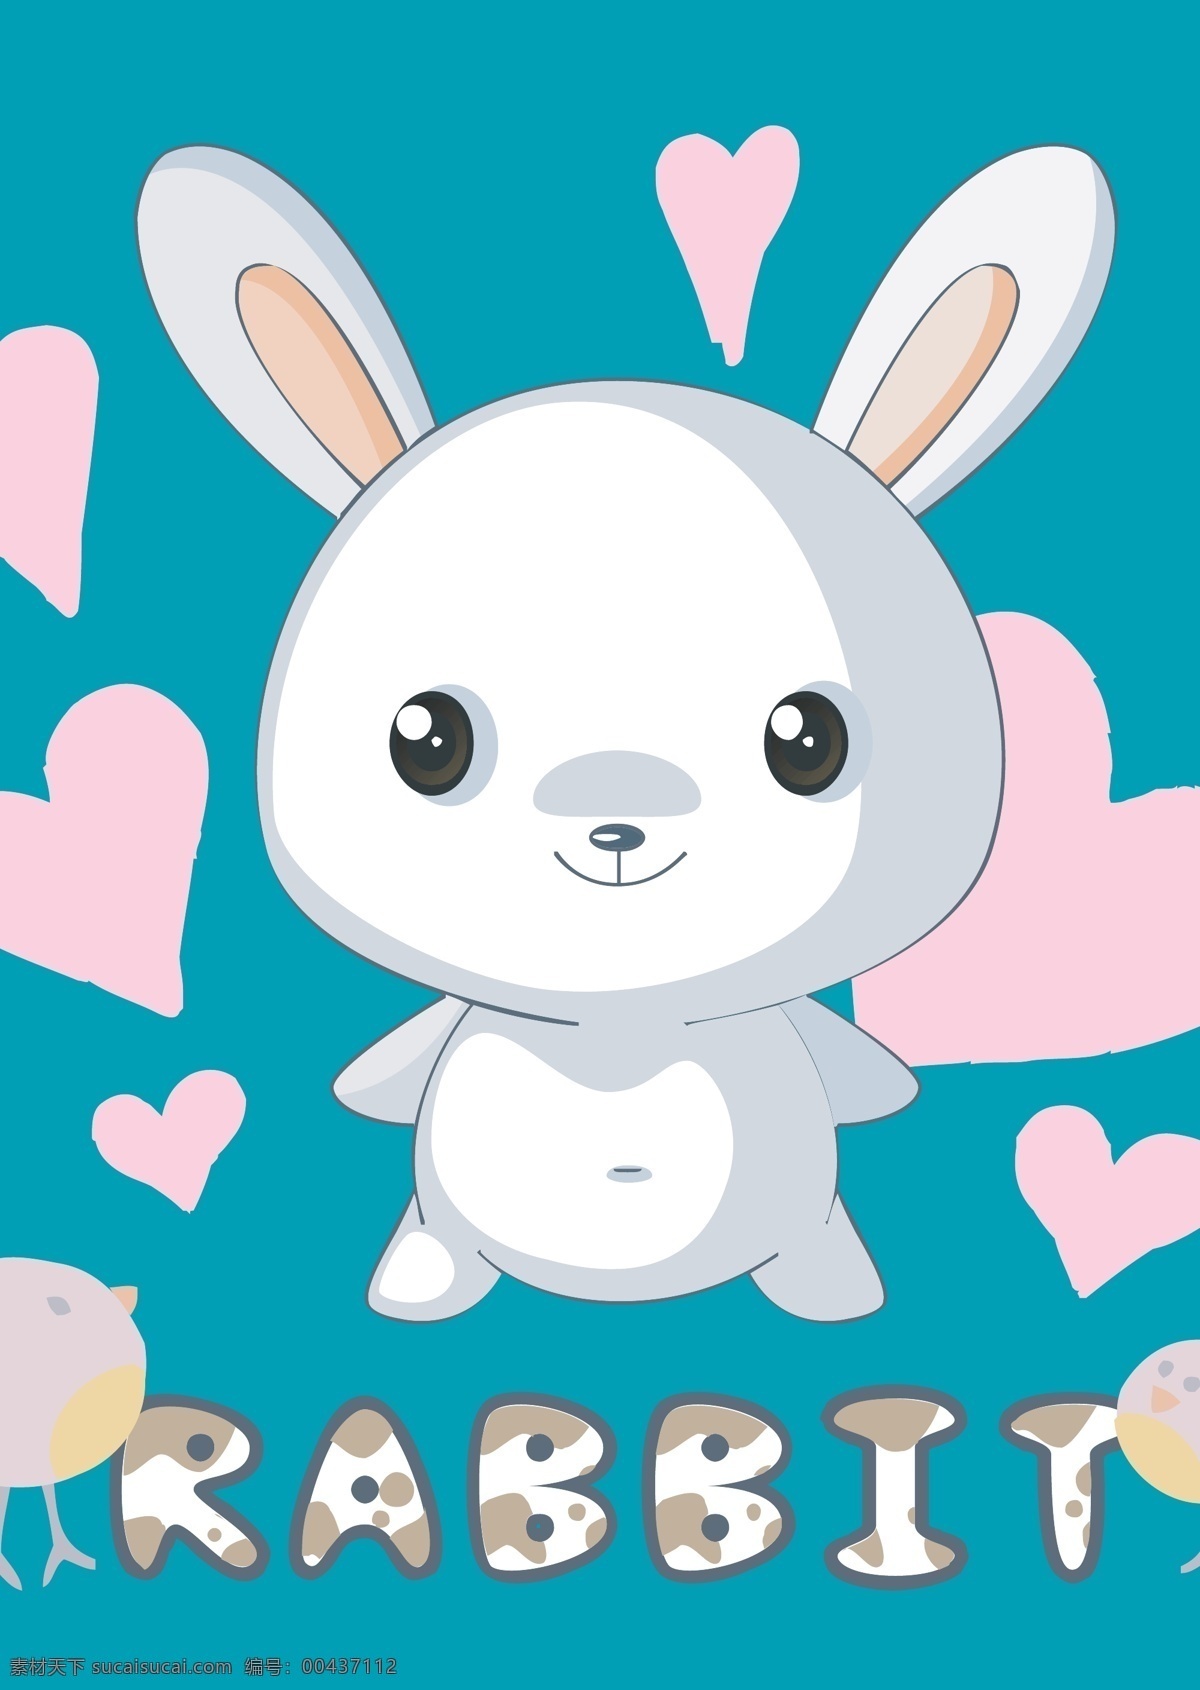 萌萌兔子 卡通 小 白兔 卡通设计 可爱卡通兔子 小白兔 萌兔宝宝 卡通萌兔子 爱心卡通兔子 矢量图 矢量人物